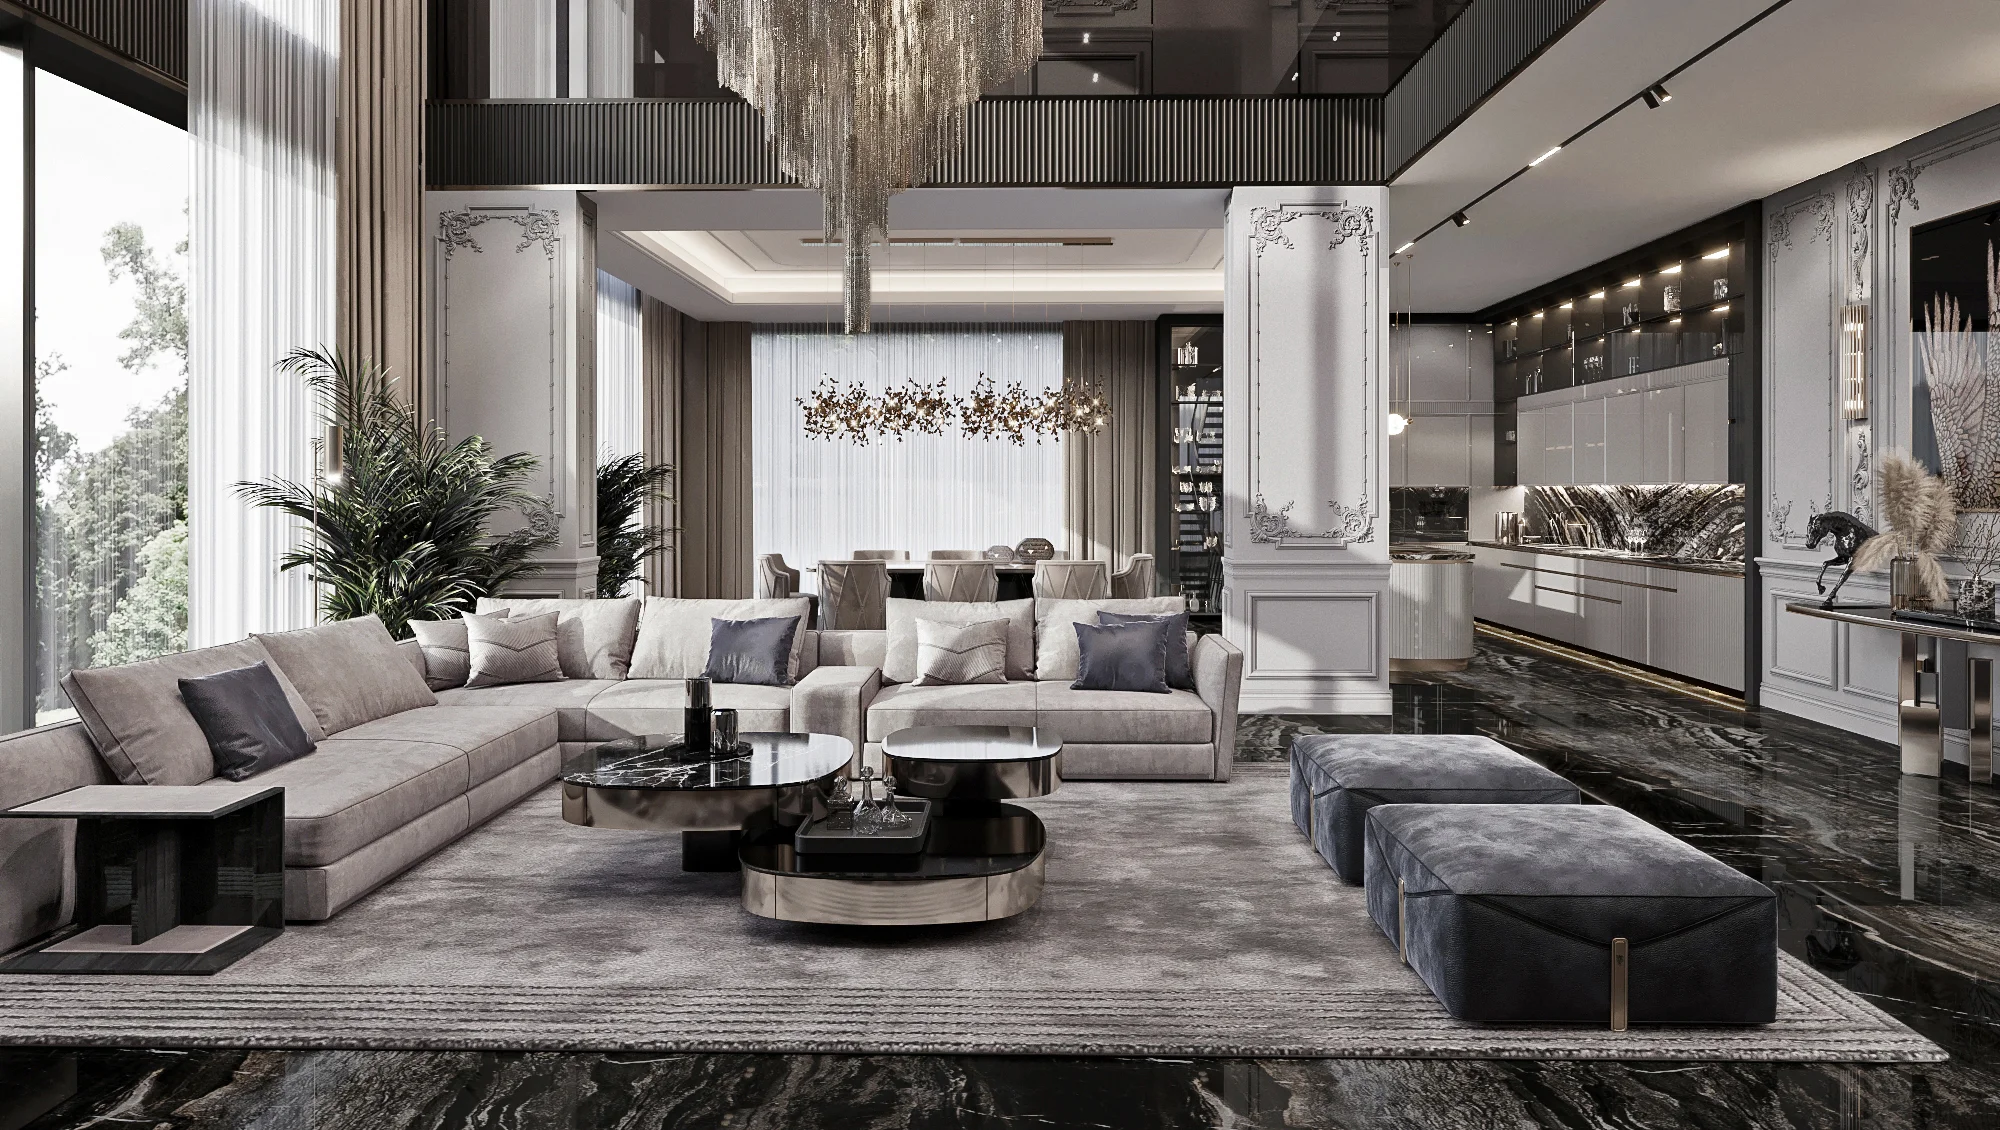 Residence for luxury living